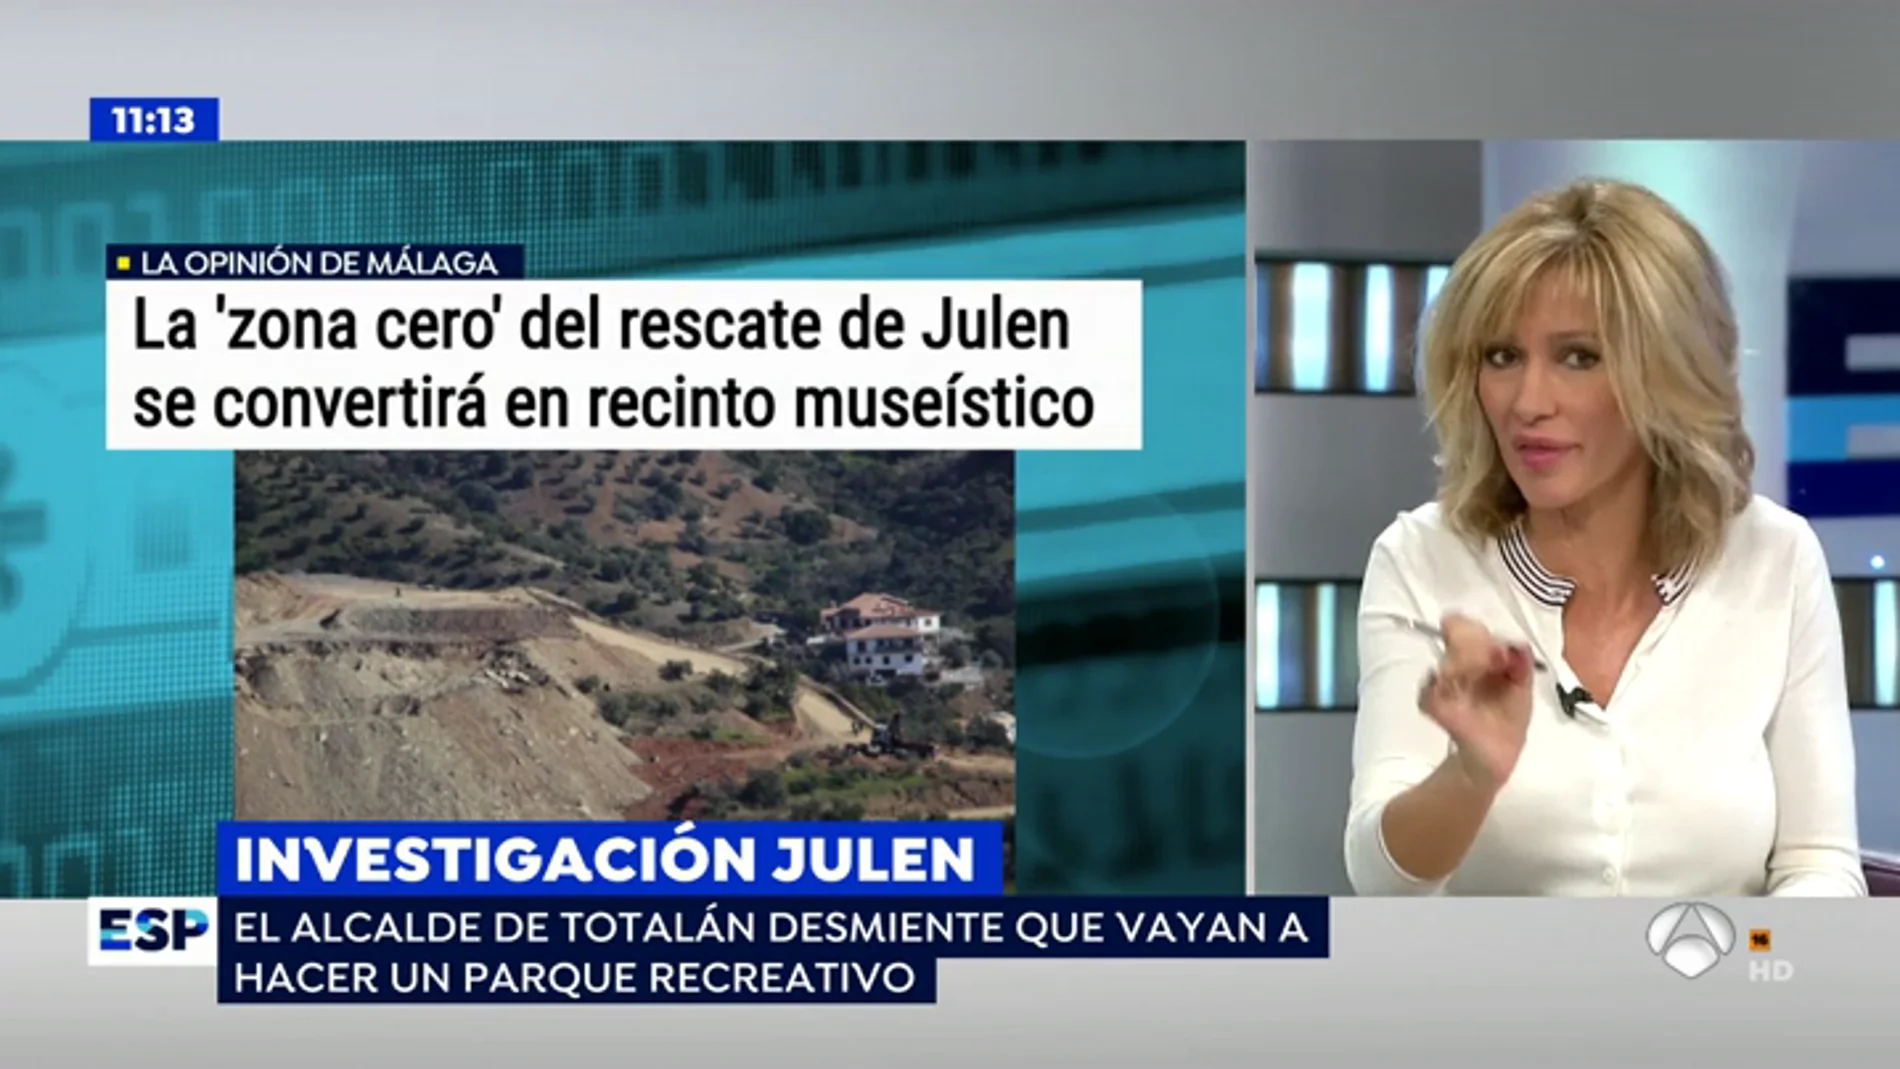 El alcalde de Totalán desmiente que la montaña donde murió Julen vaya a convertirse en un museo en memoria del niño